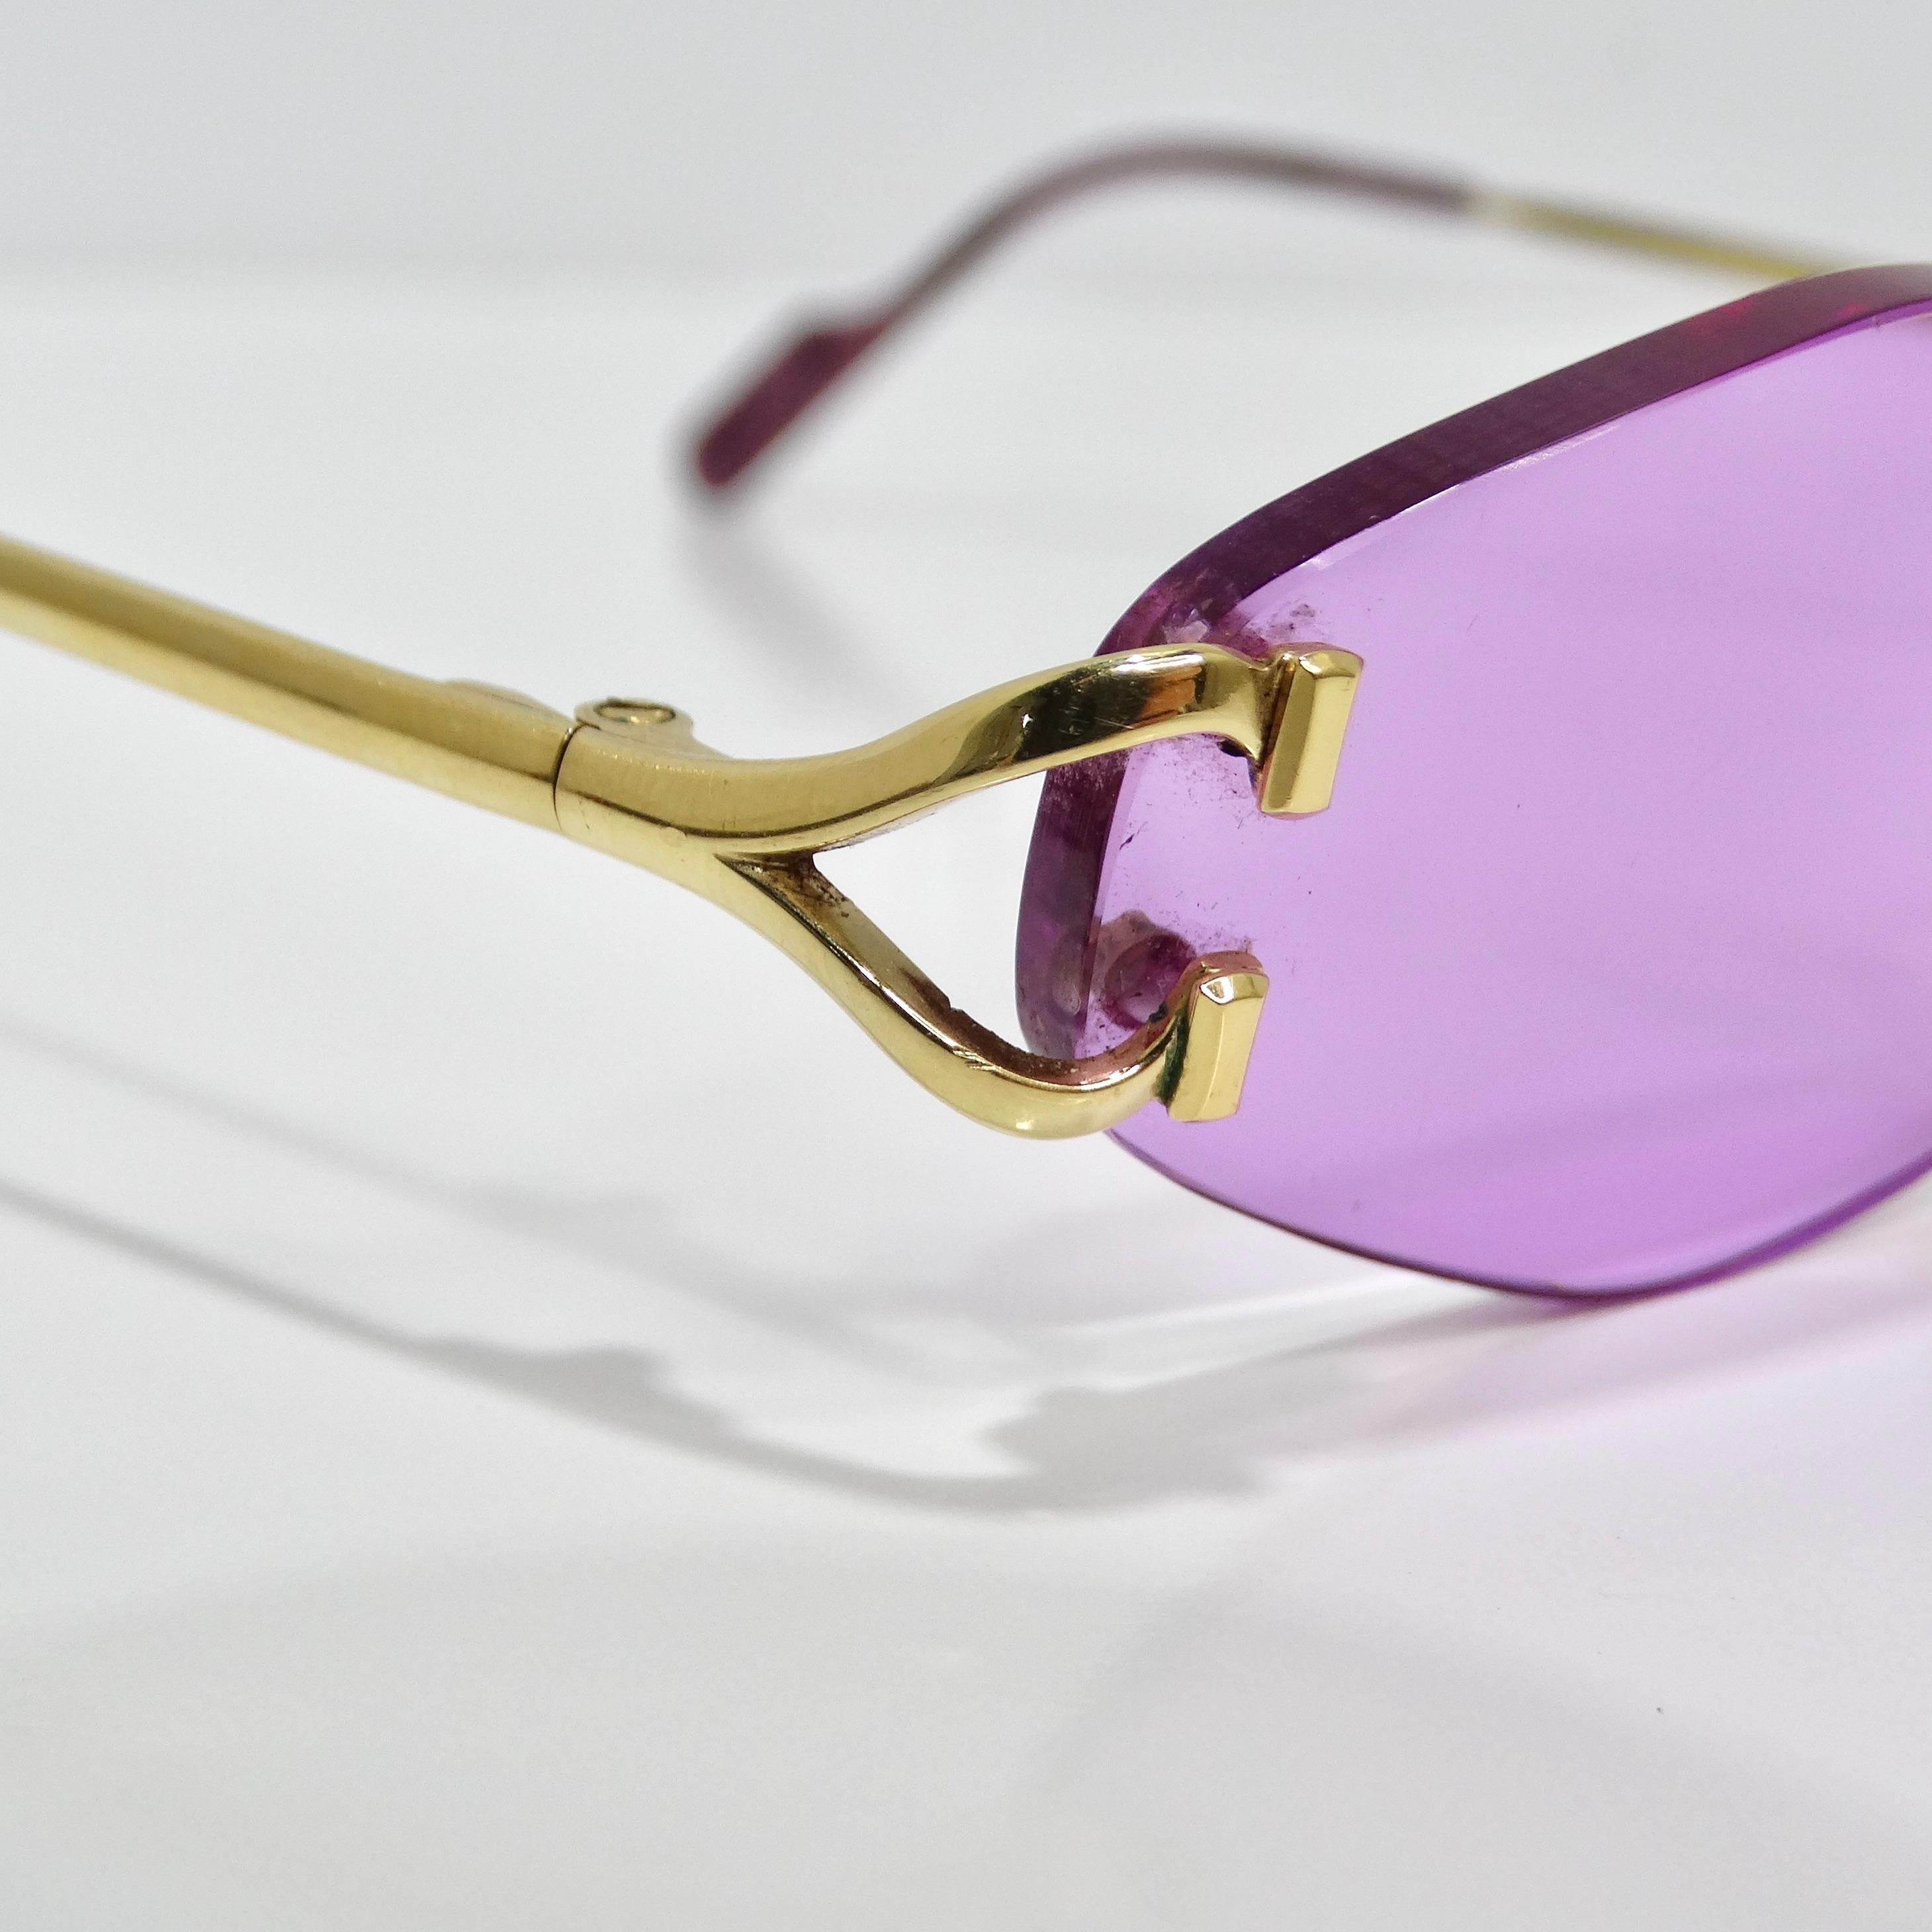 Rehaussez votre style avec les lunettes de soleil Cartier Vintage Rimless Purple, un clin d'œil chic à la mode du début des années 2000. Ces lunettes de soleil sont dotées de lentilles hexagonales sans bord dans une teinte violette vibrante, ce qui